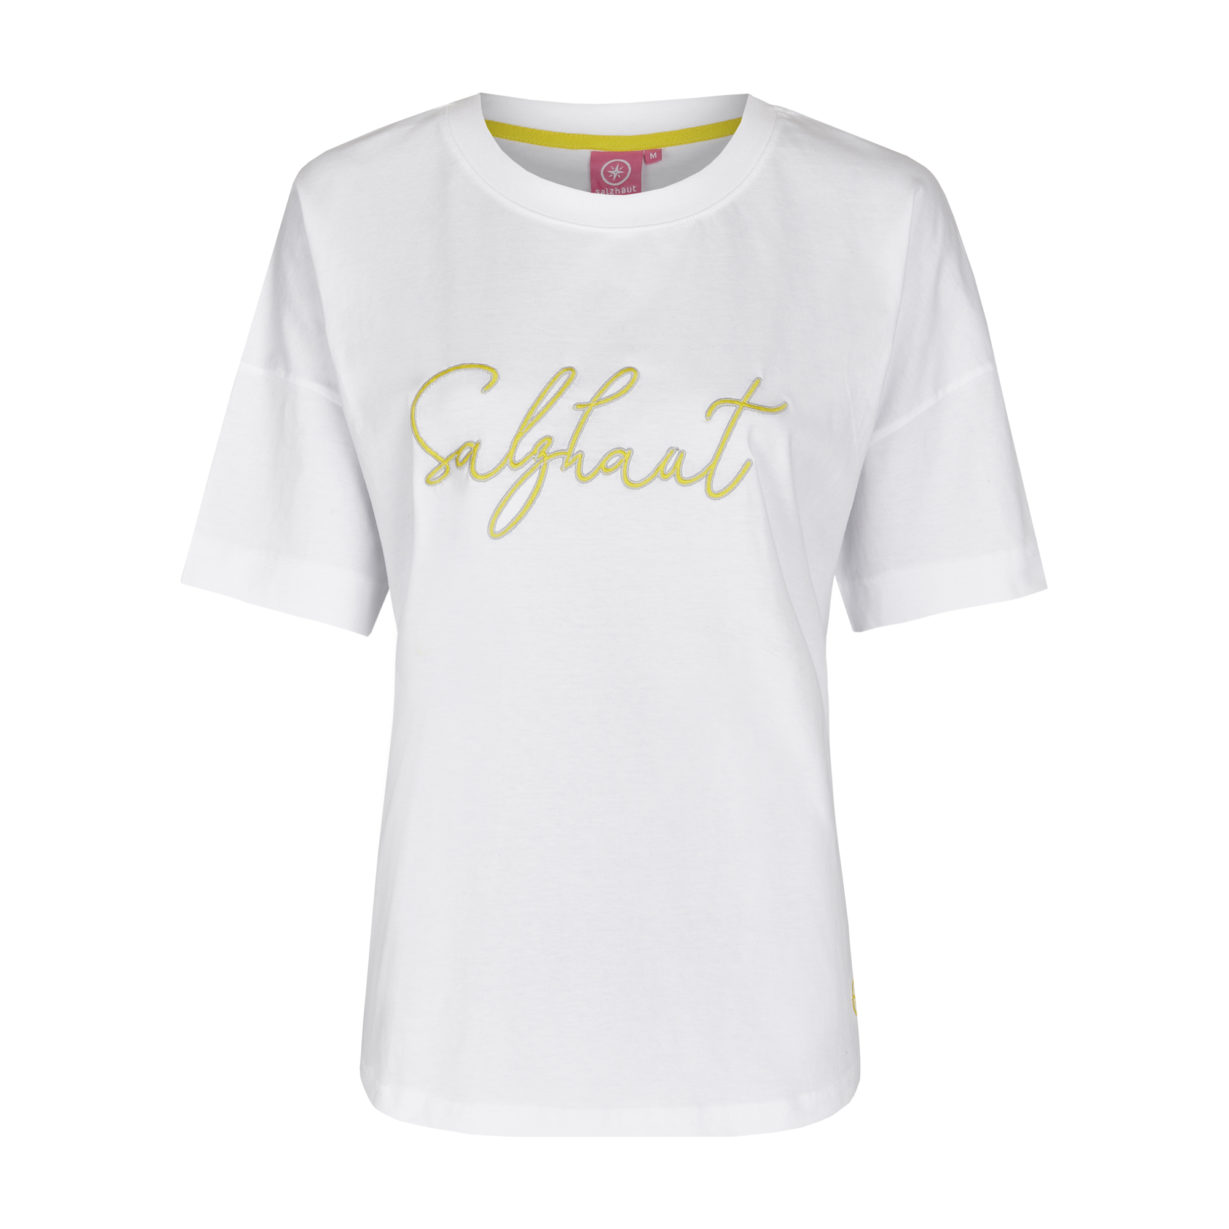 Fidesa T-Shirt White